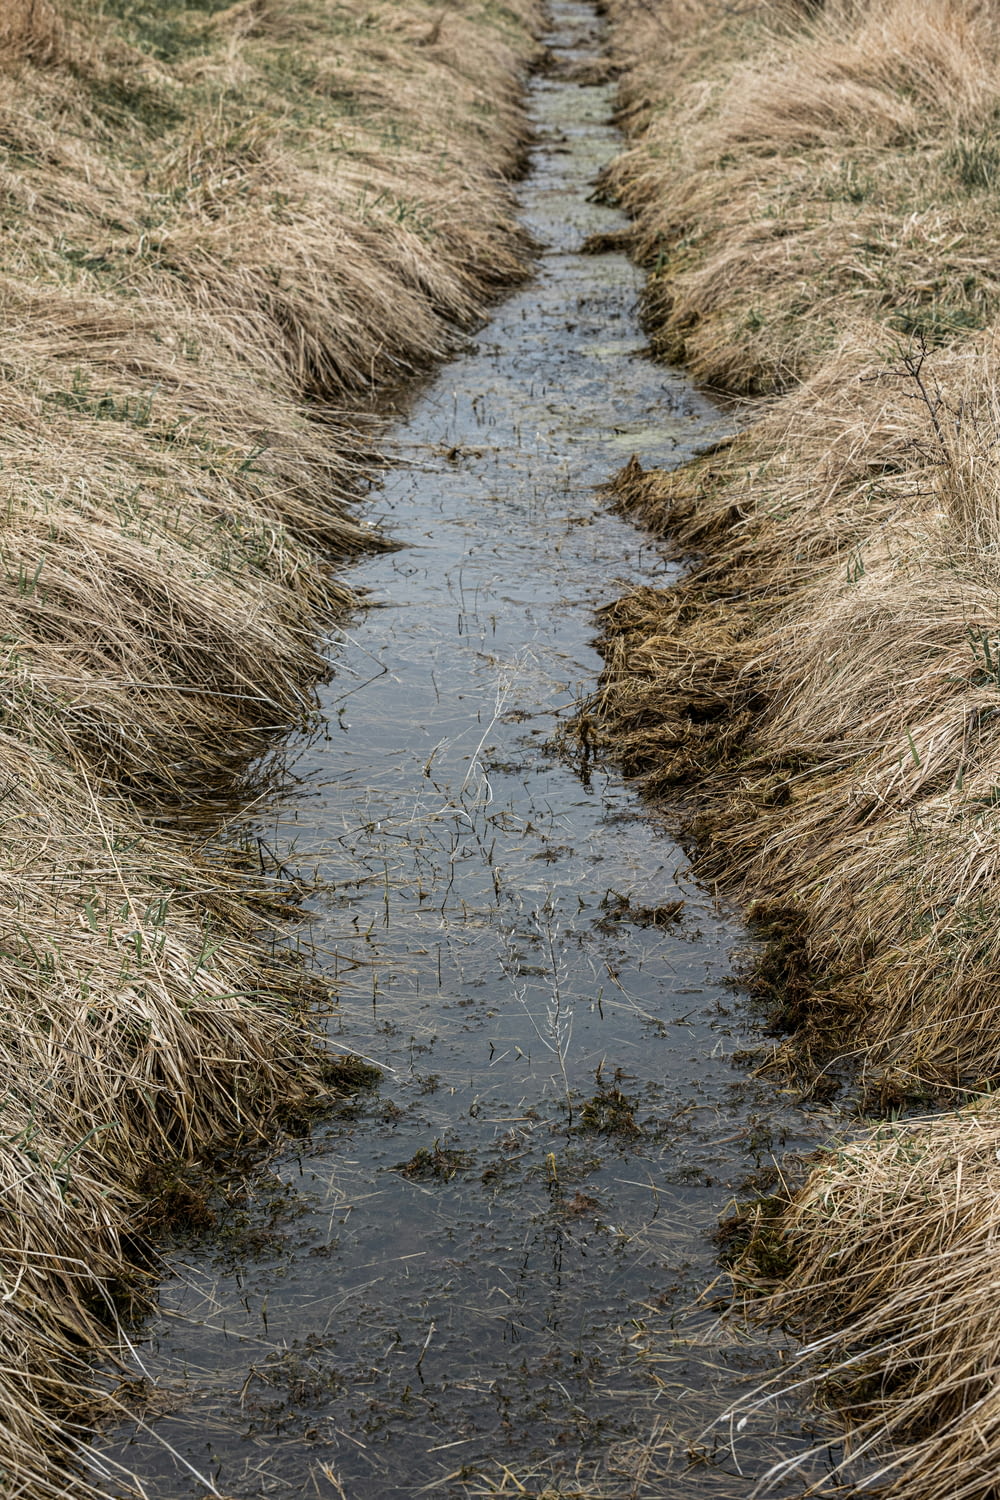 a stream of water running through a dry grass field